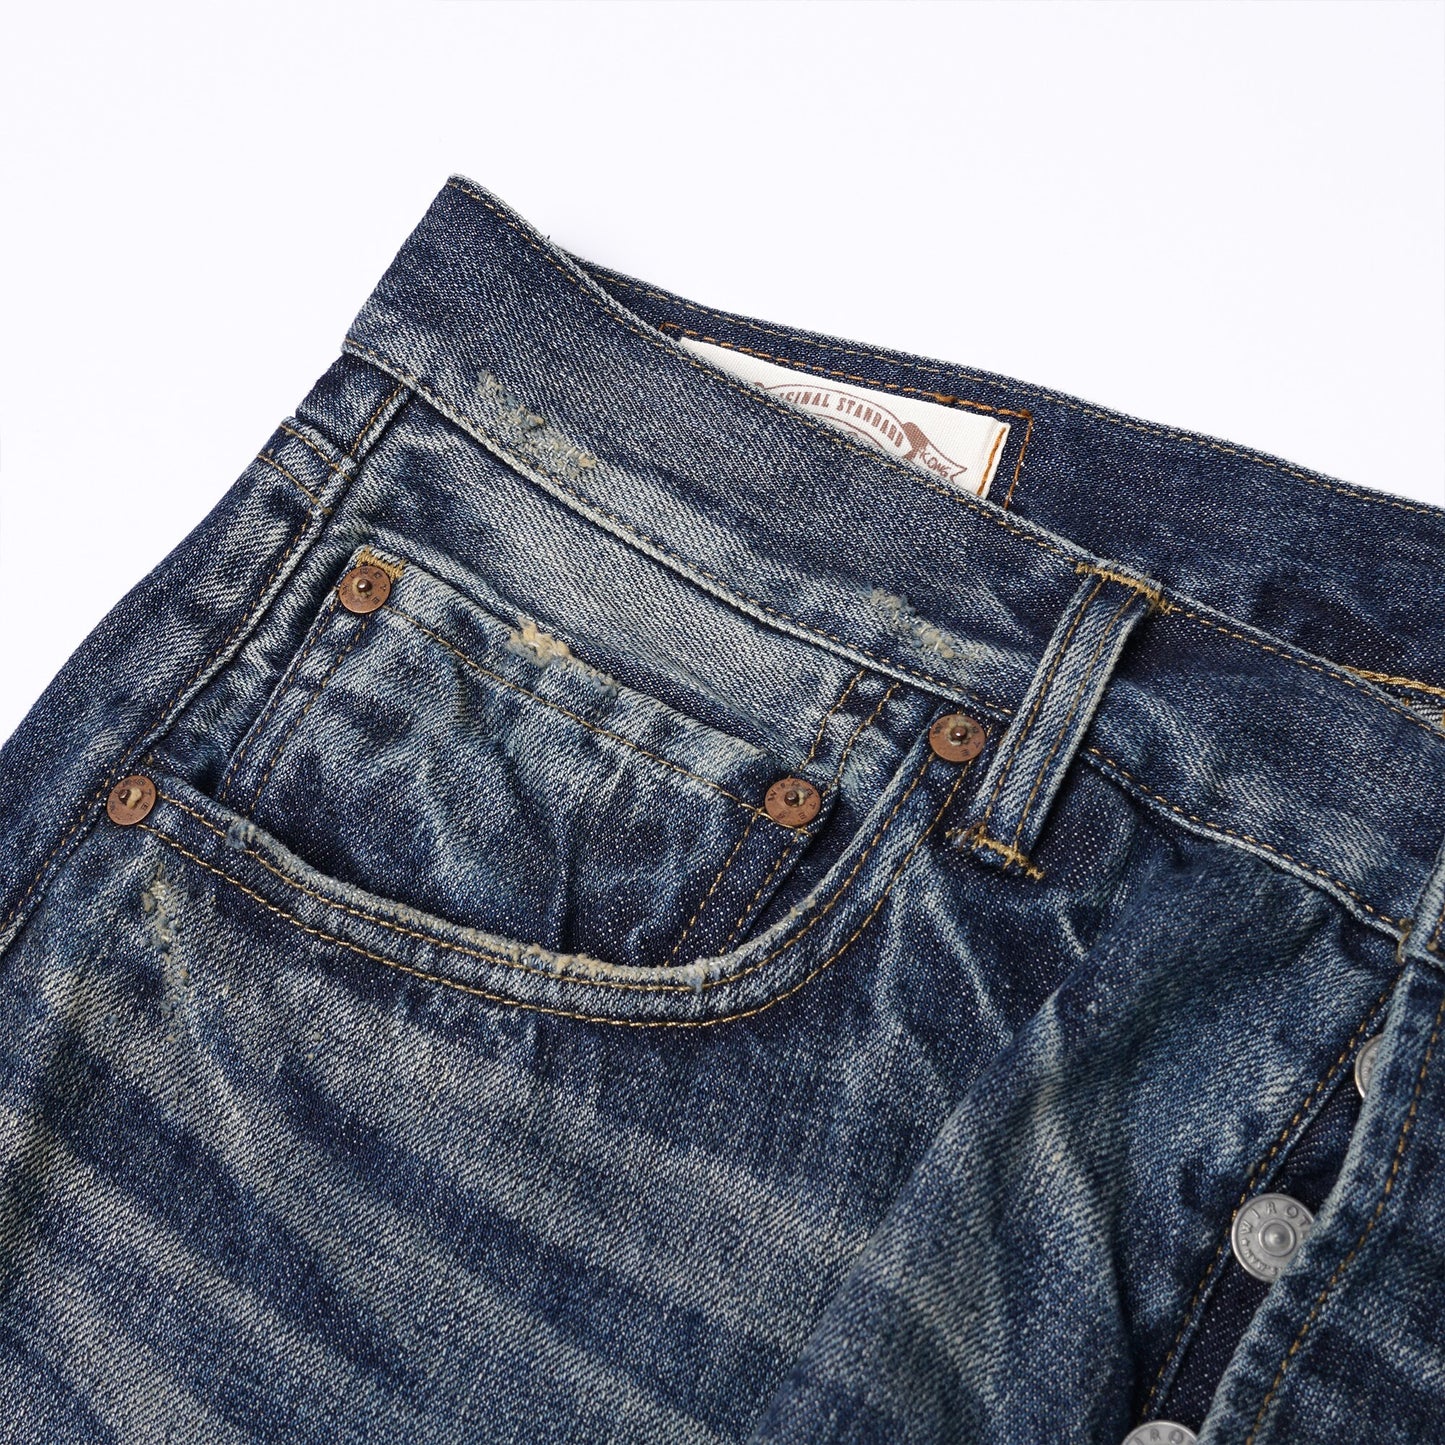 【訂製】HG01 16oz. Damaged Crush Straight Cut Jeans